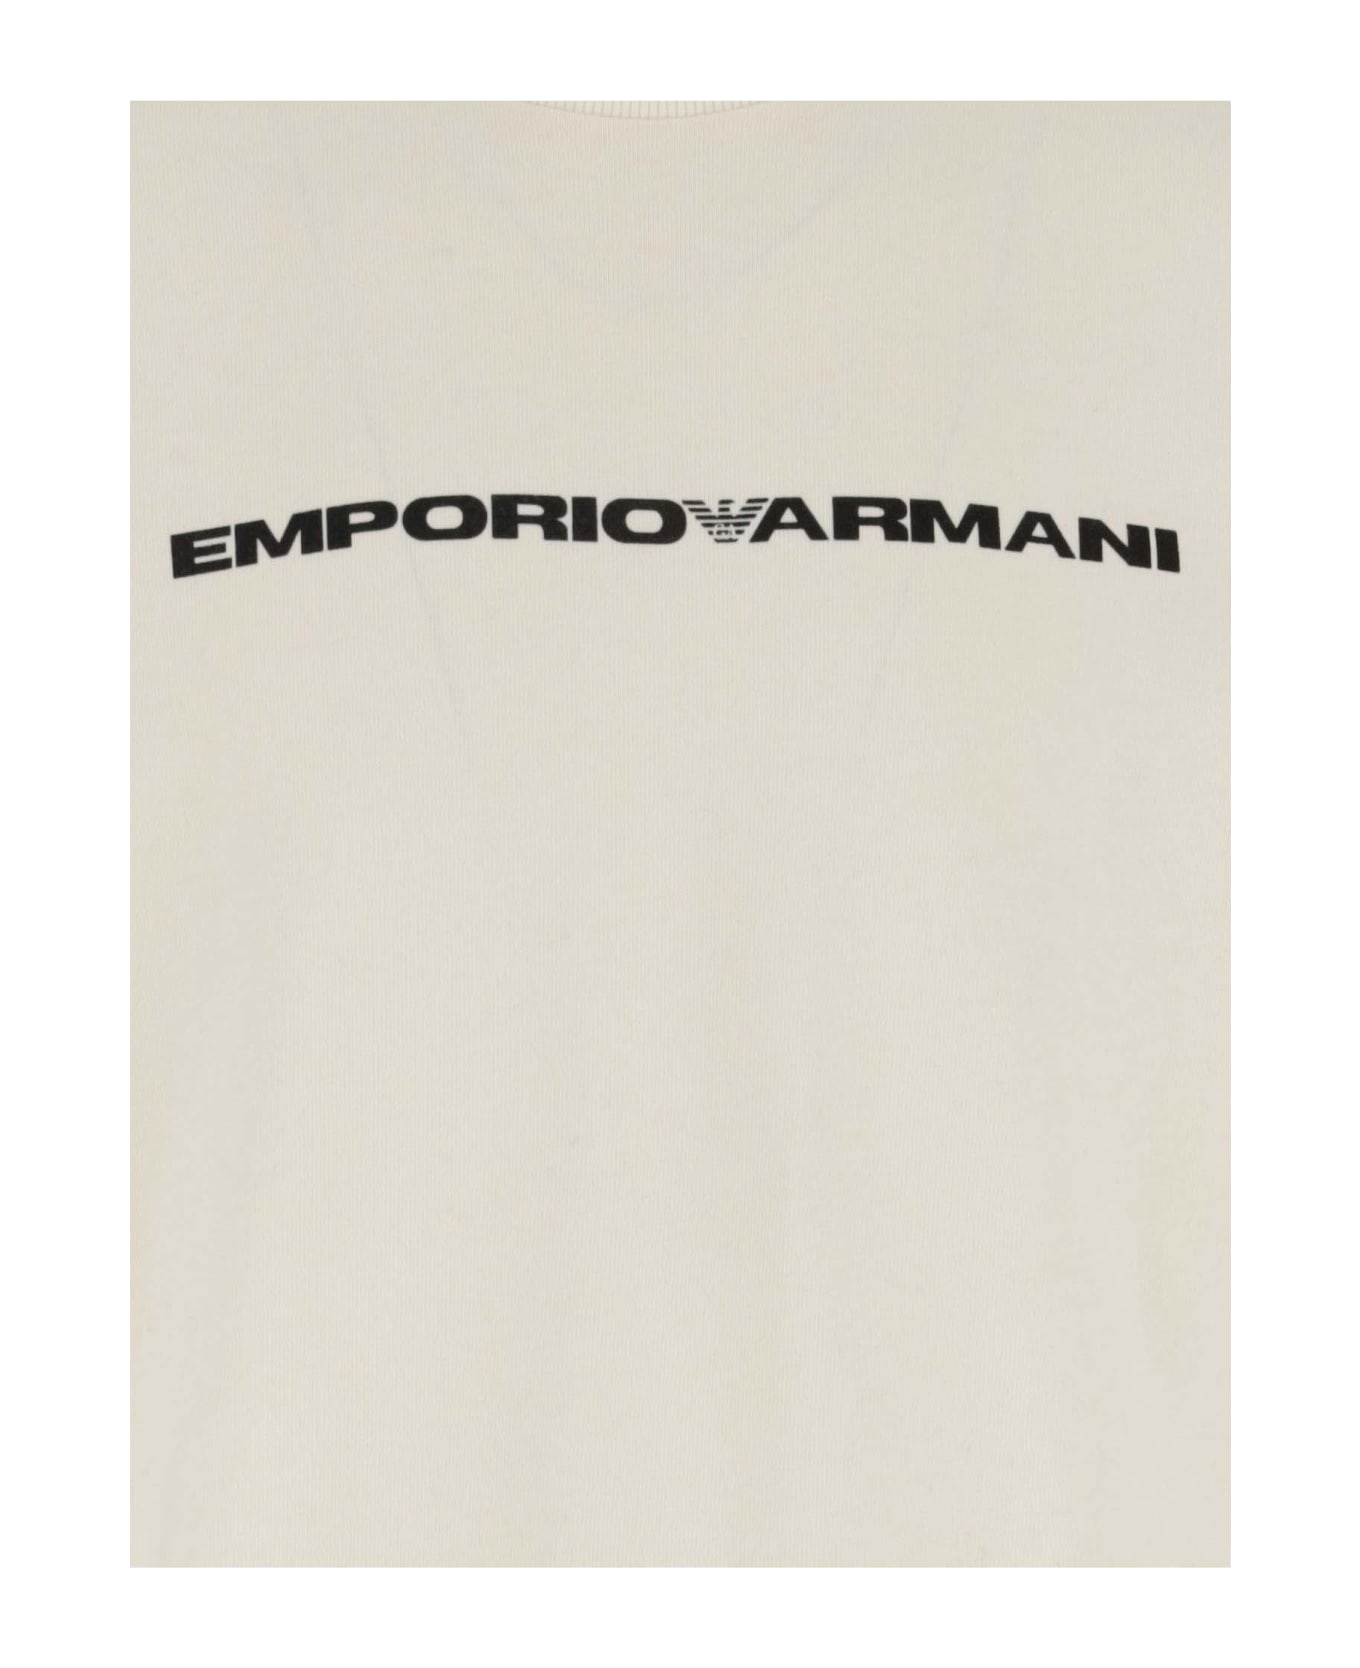 Emporio Armani Cotton T-shirt With Logo - White